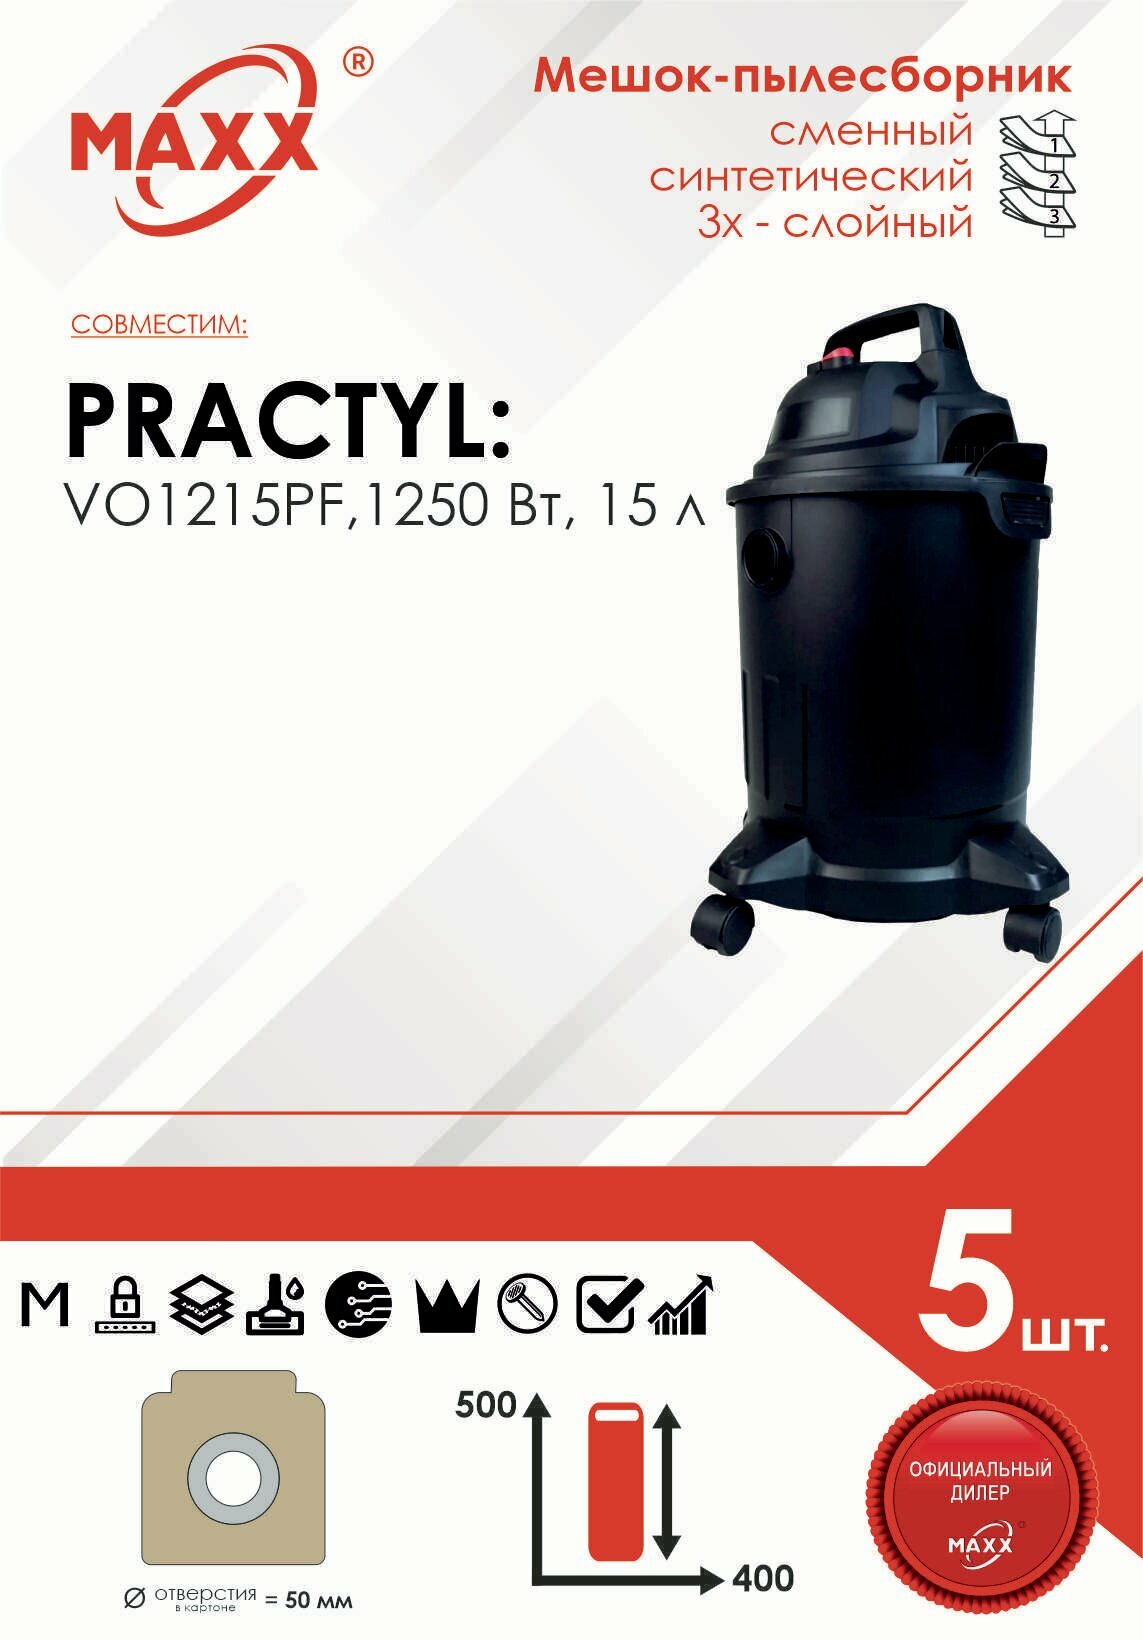 Мешок - пылесборник 5 шт. для пылесоса Practyl VO1215PF,1250 Вт, 15 л 88310083, 84579753